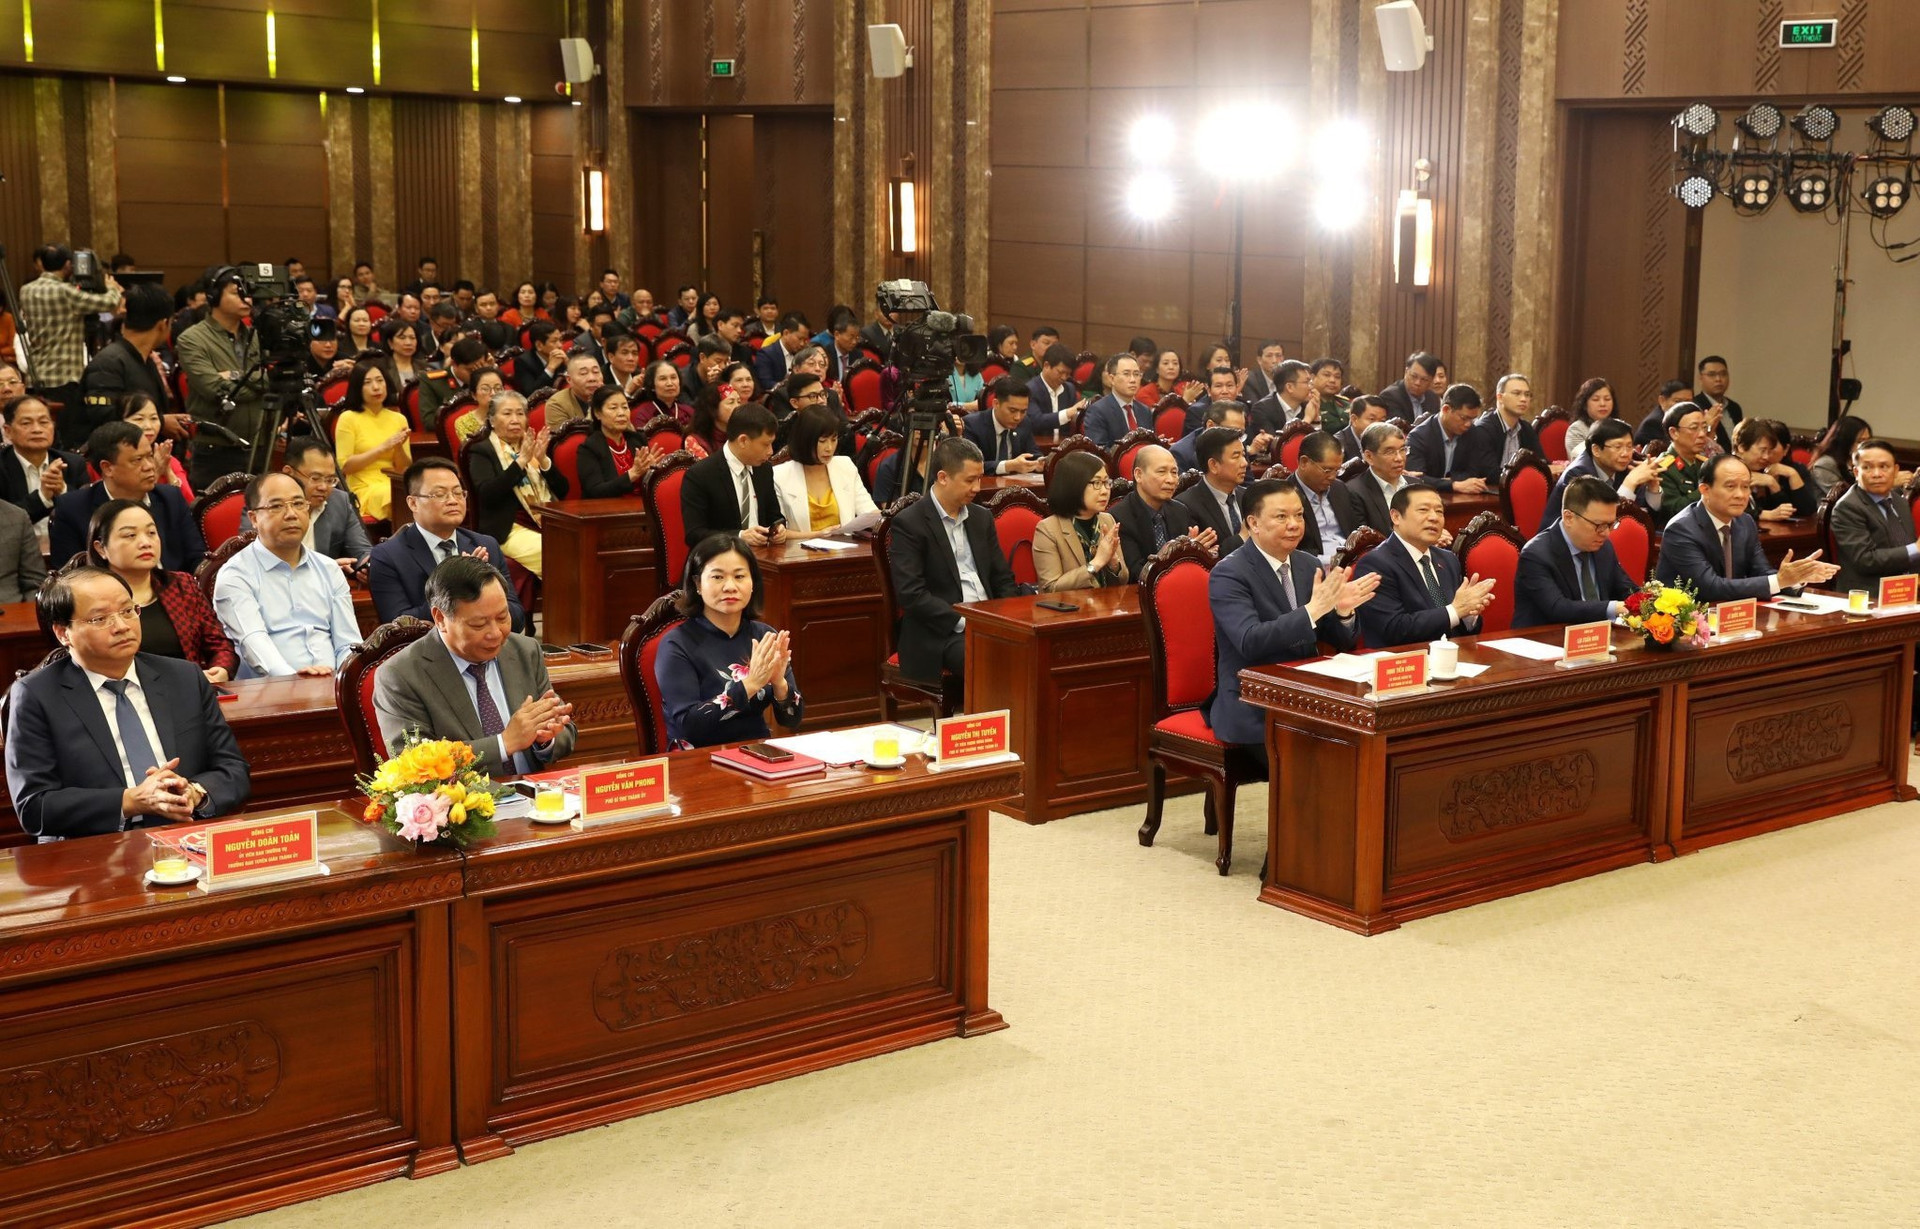 Hà Nội trao giải báo chí về xây dựng Đảng và hệ thống chính trị